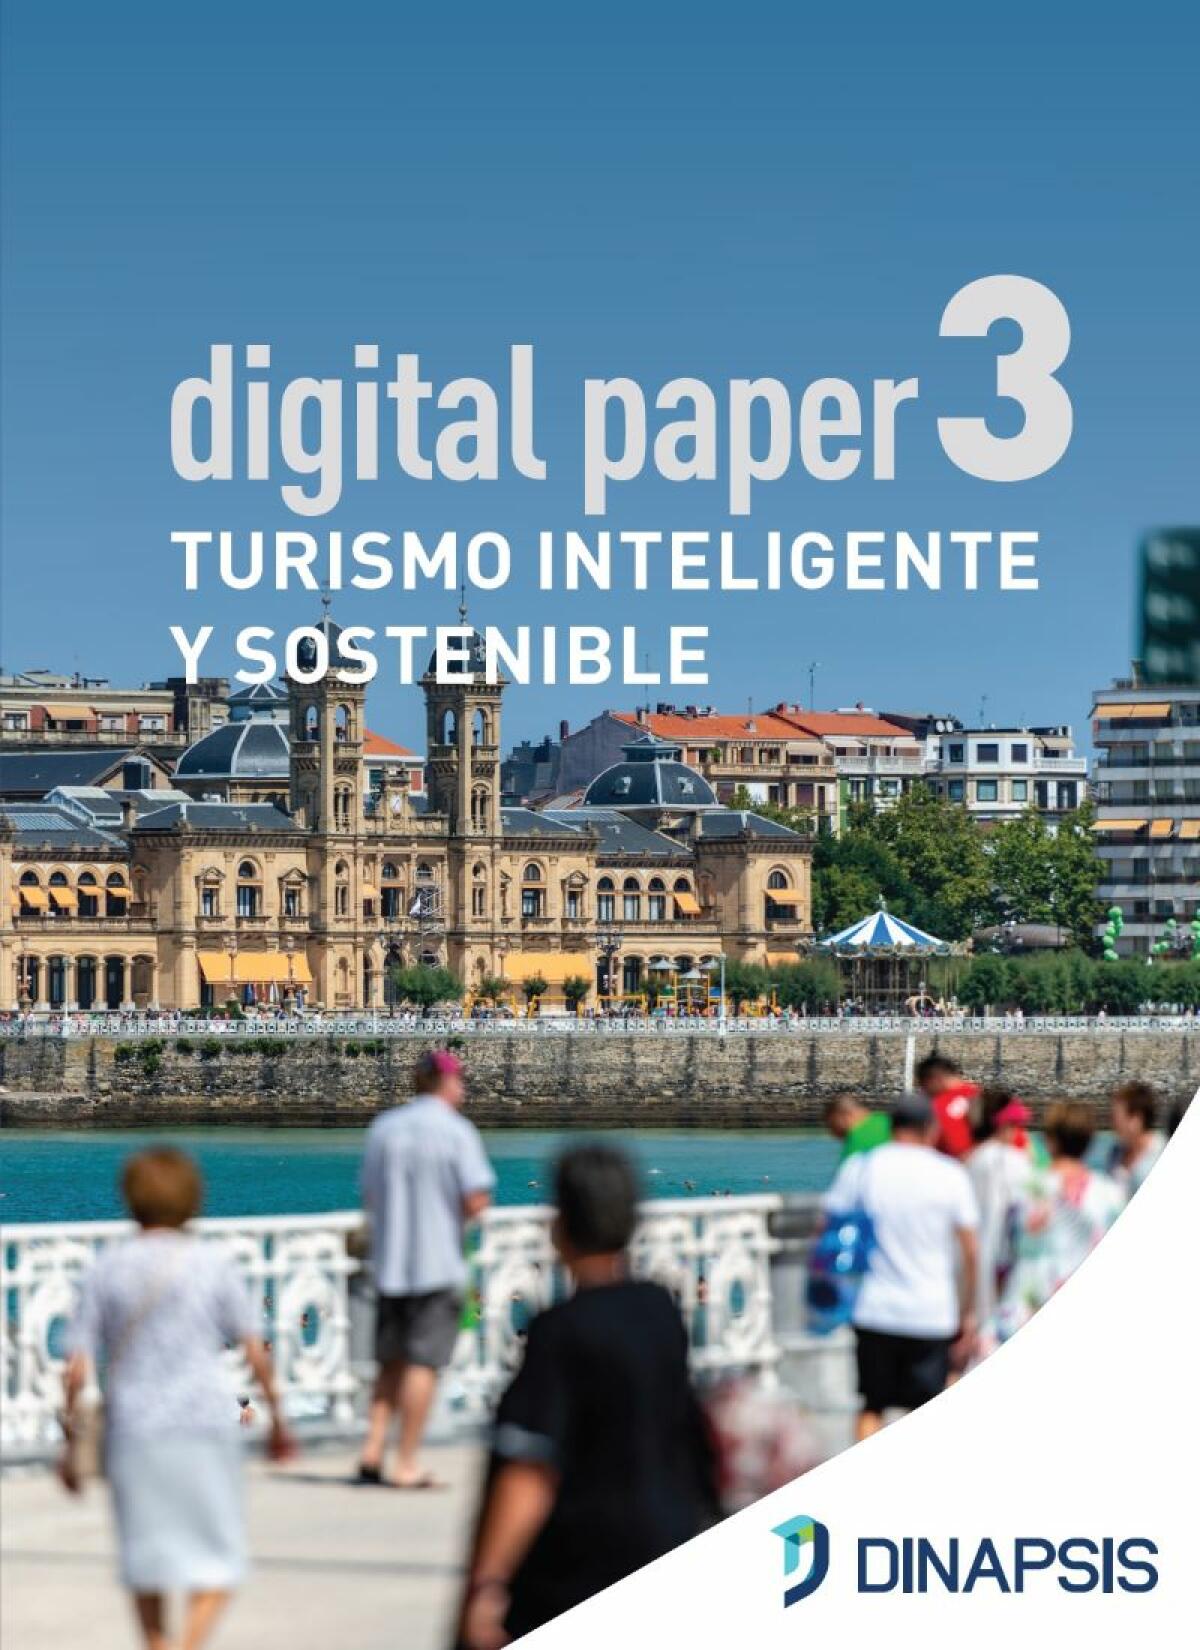 Dinapsis Benidorm acoge la presentación del nuevo Digital Paper centrado en el “Turismo inteligente y sostenible”